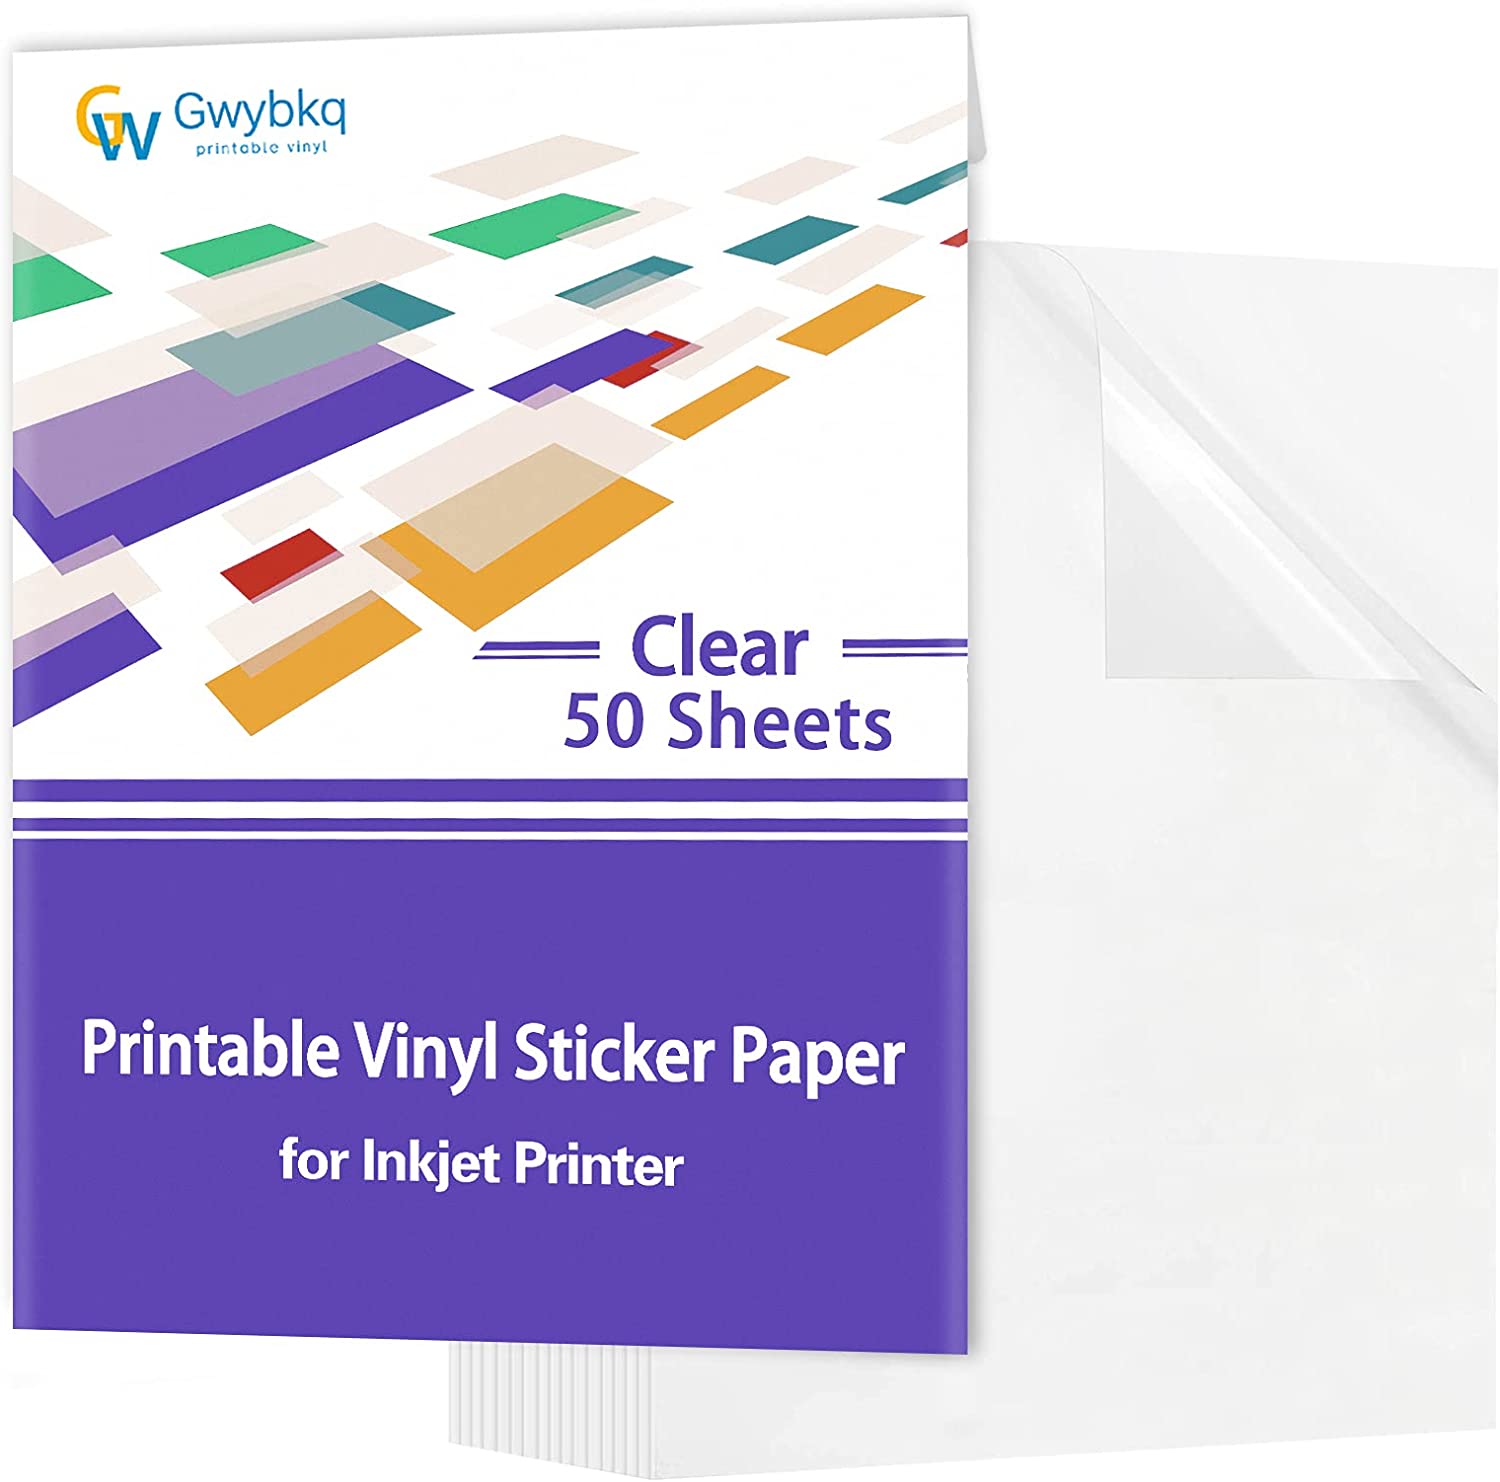 Gwybkq Clear Printable Vinyl Sticker Paper for Inkjet [...]